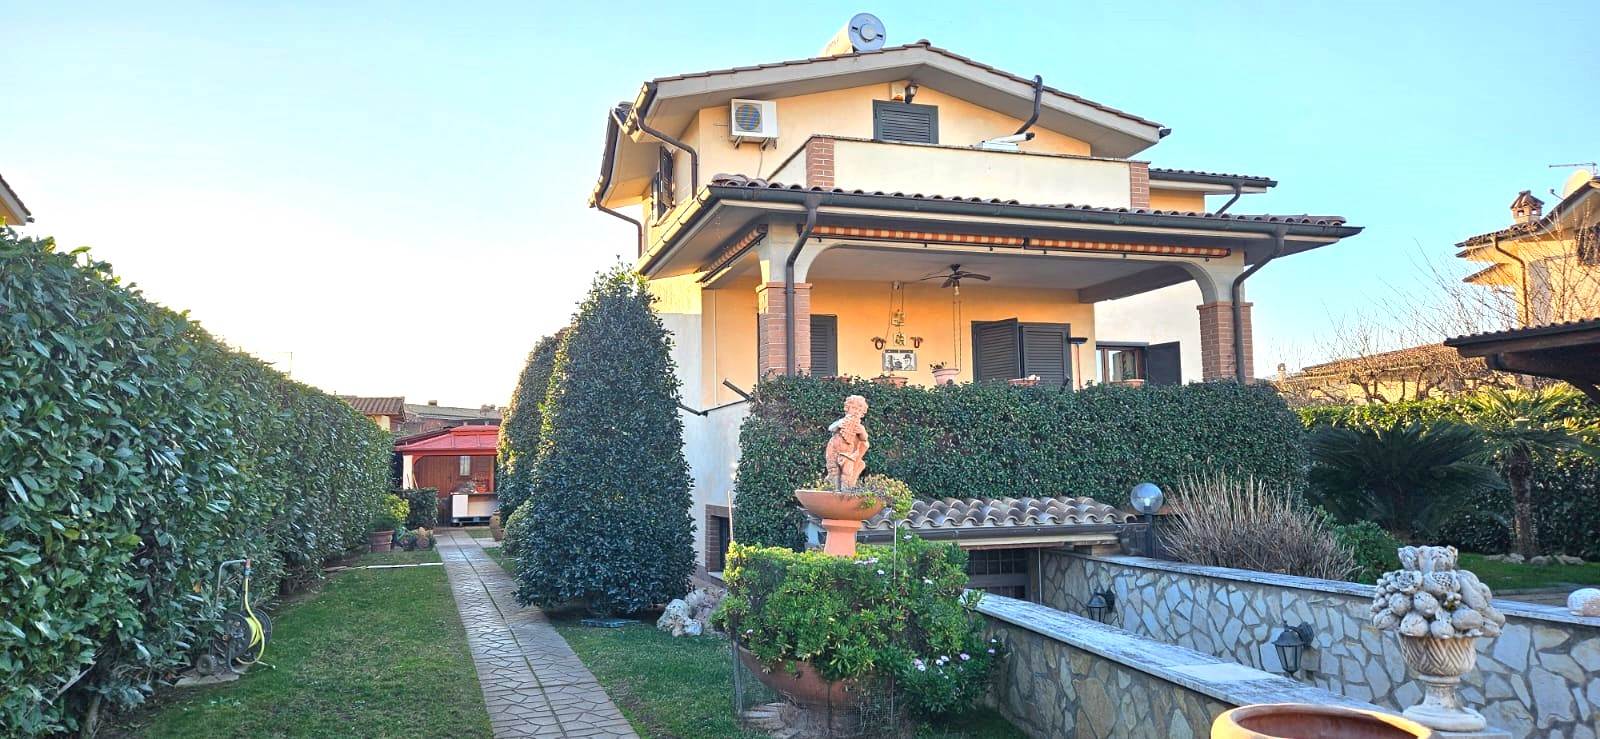 Villa in vendita a Fiano Romano, 6 locali, prezzo € 344.000 | PortaleAgenzieImmobiliari.it